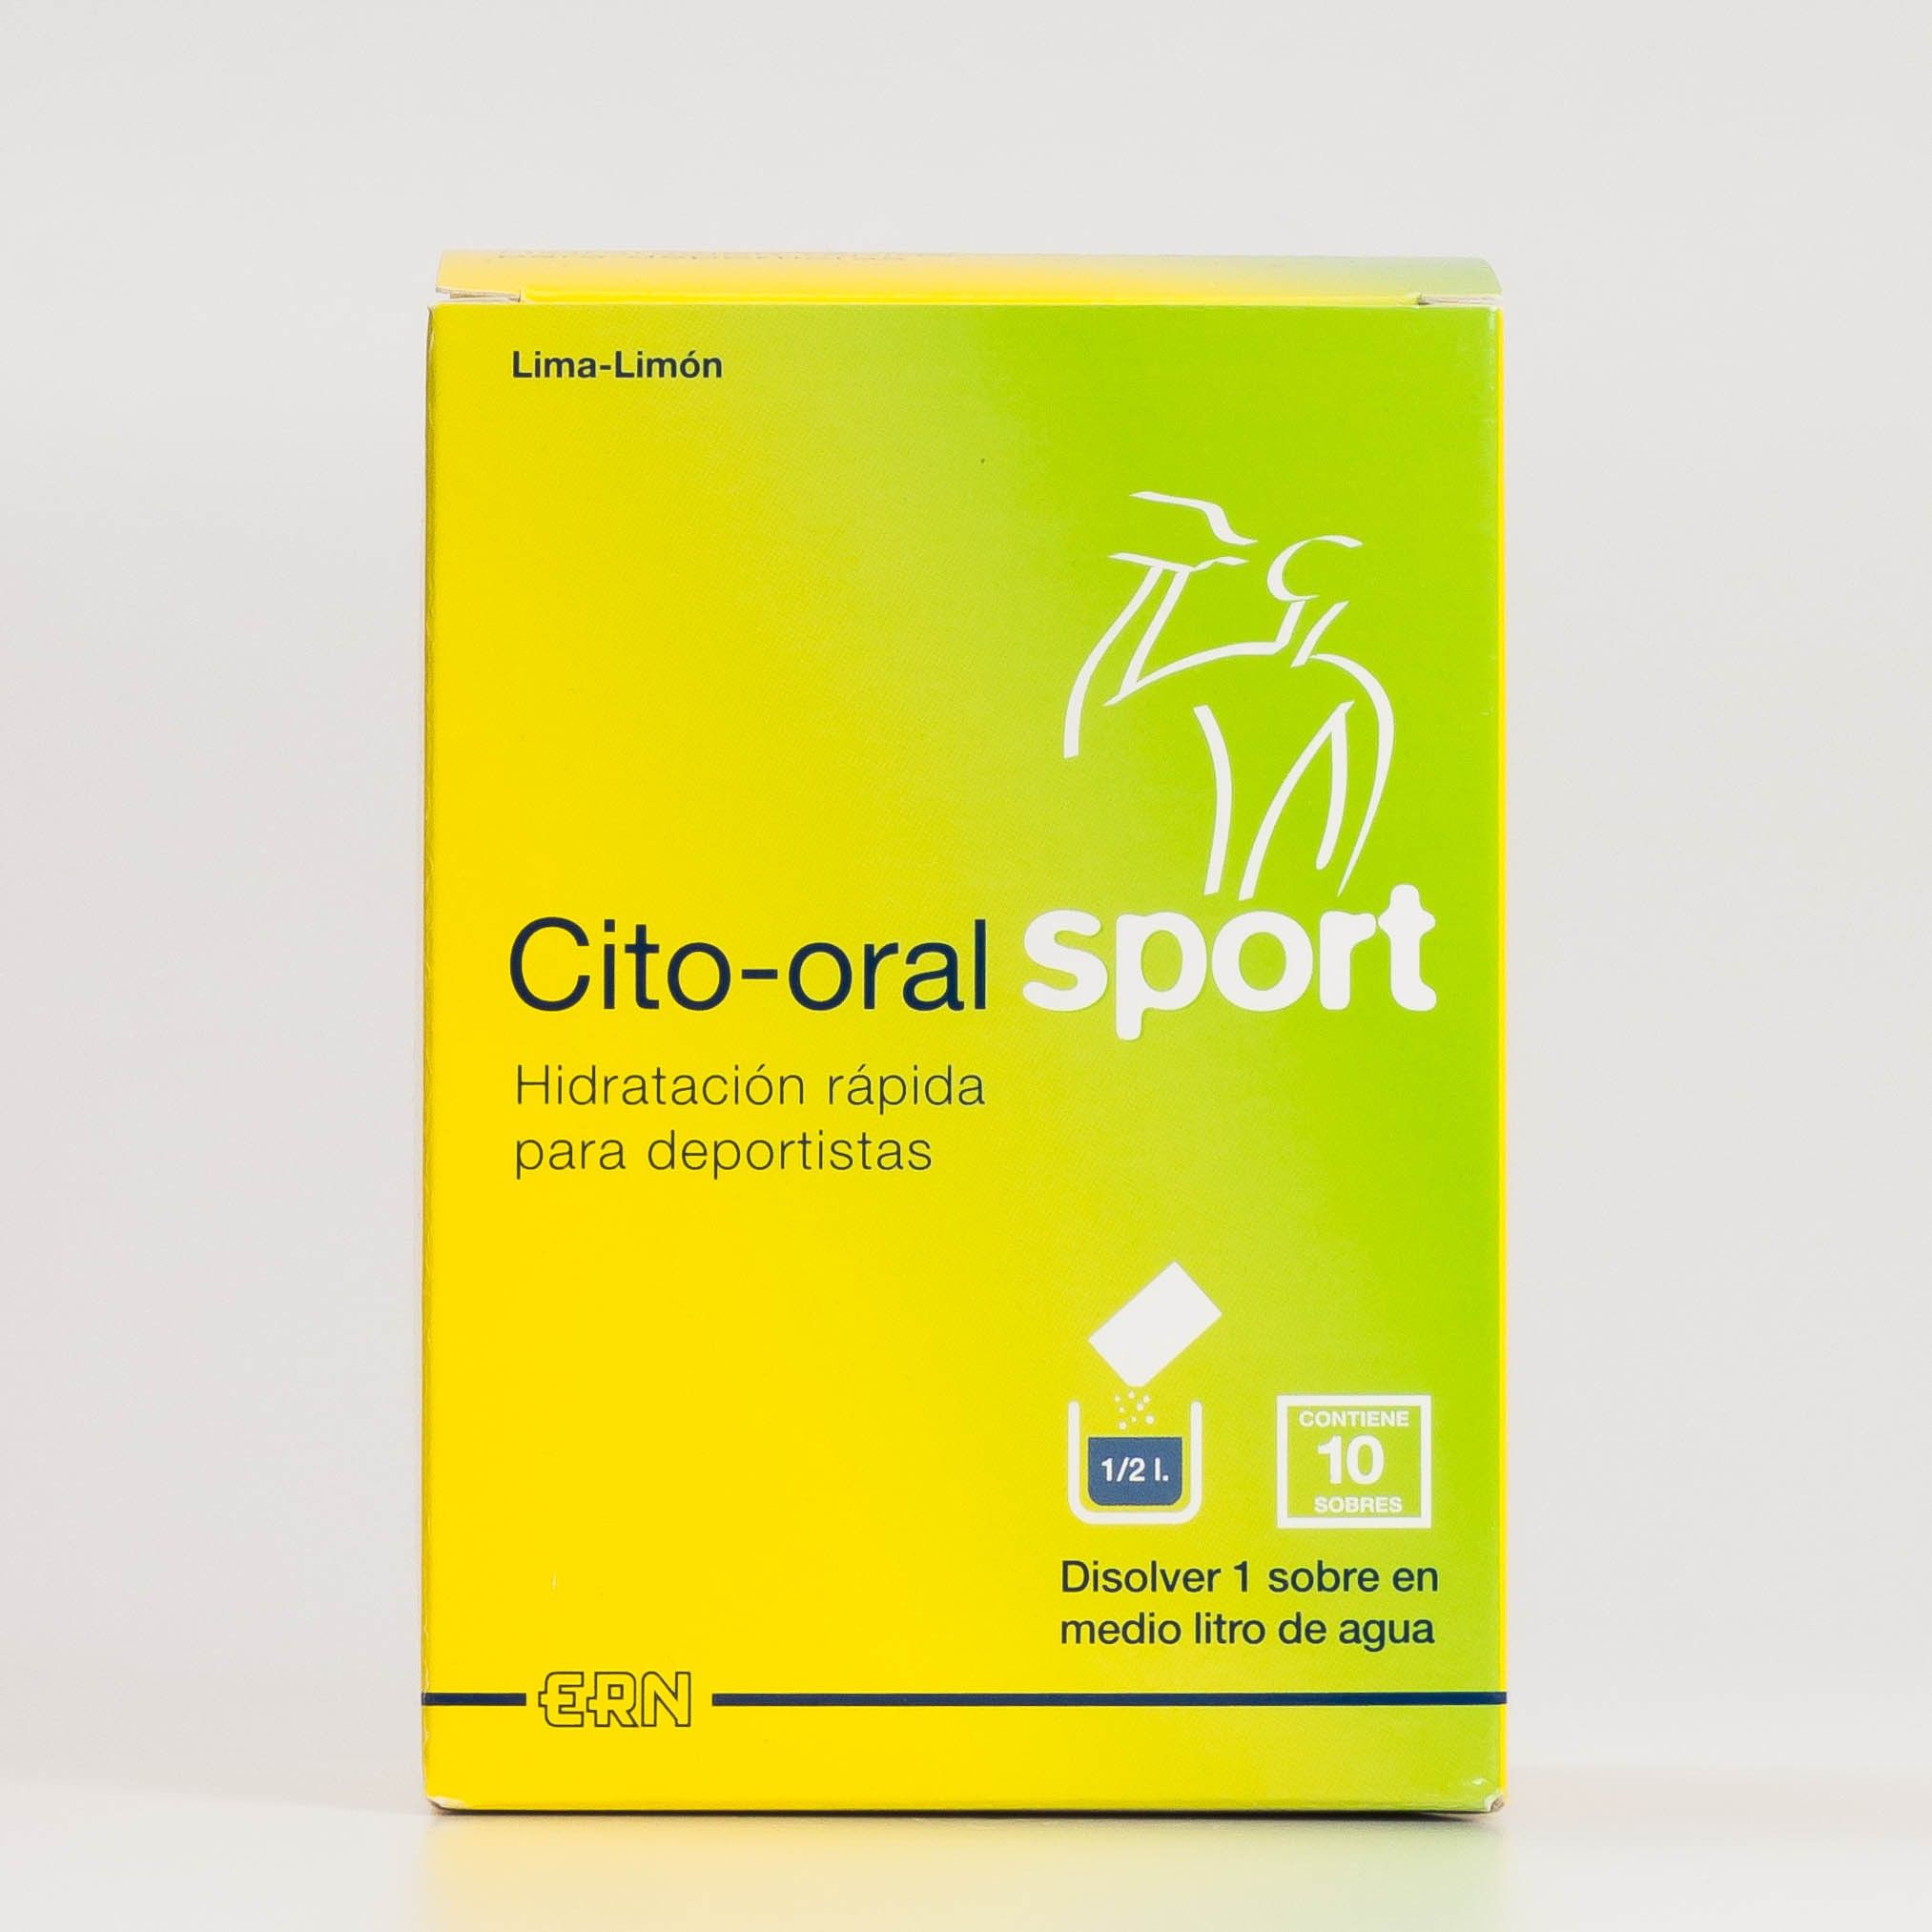 Cito-oral Sport, 10 bolsas.